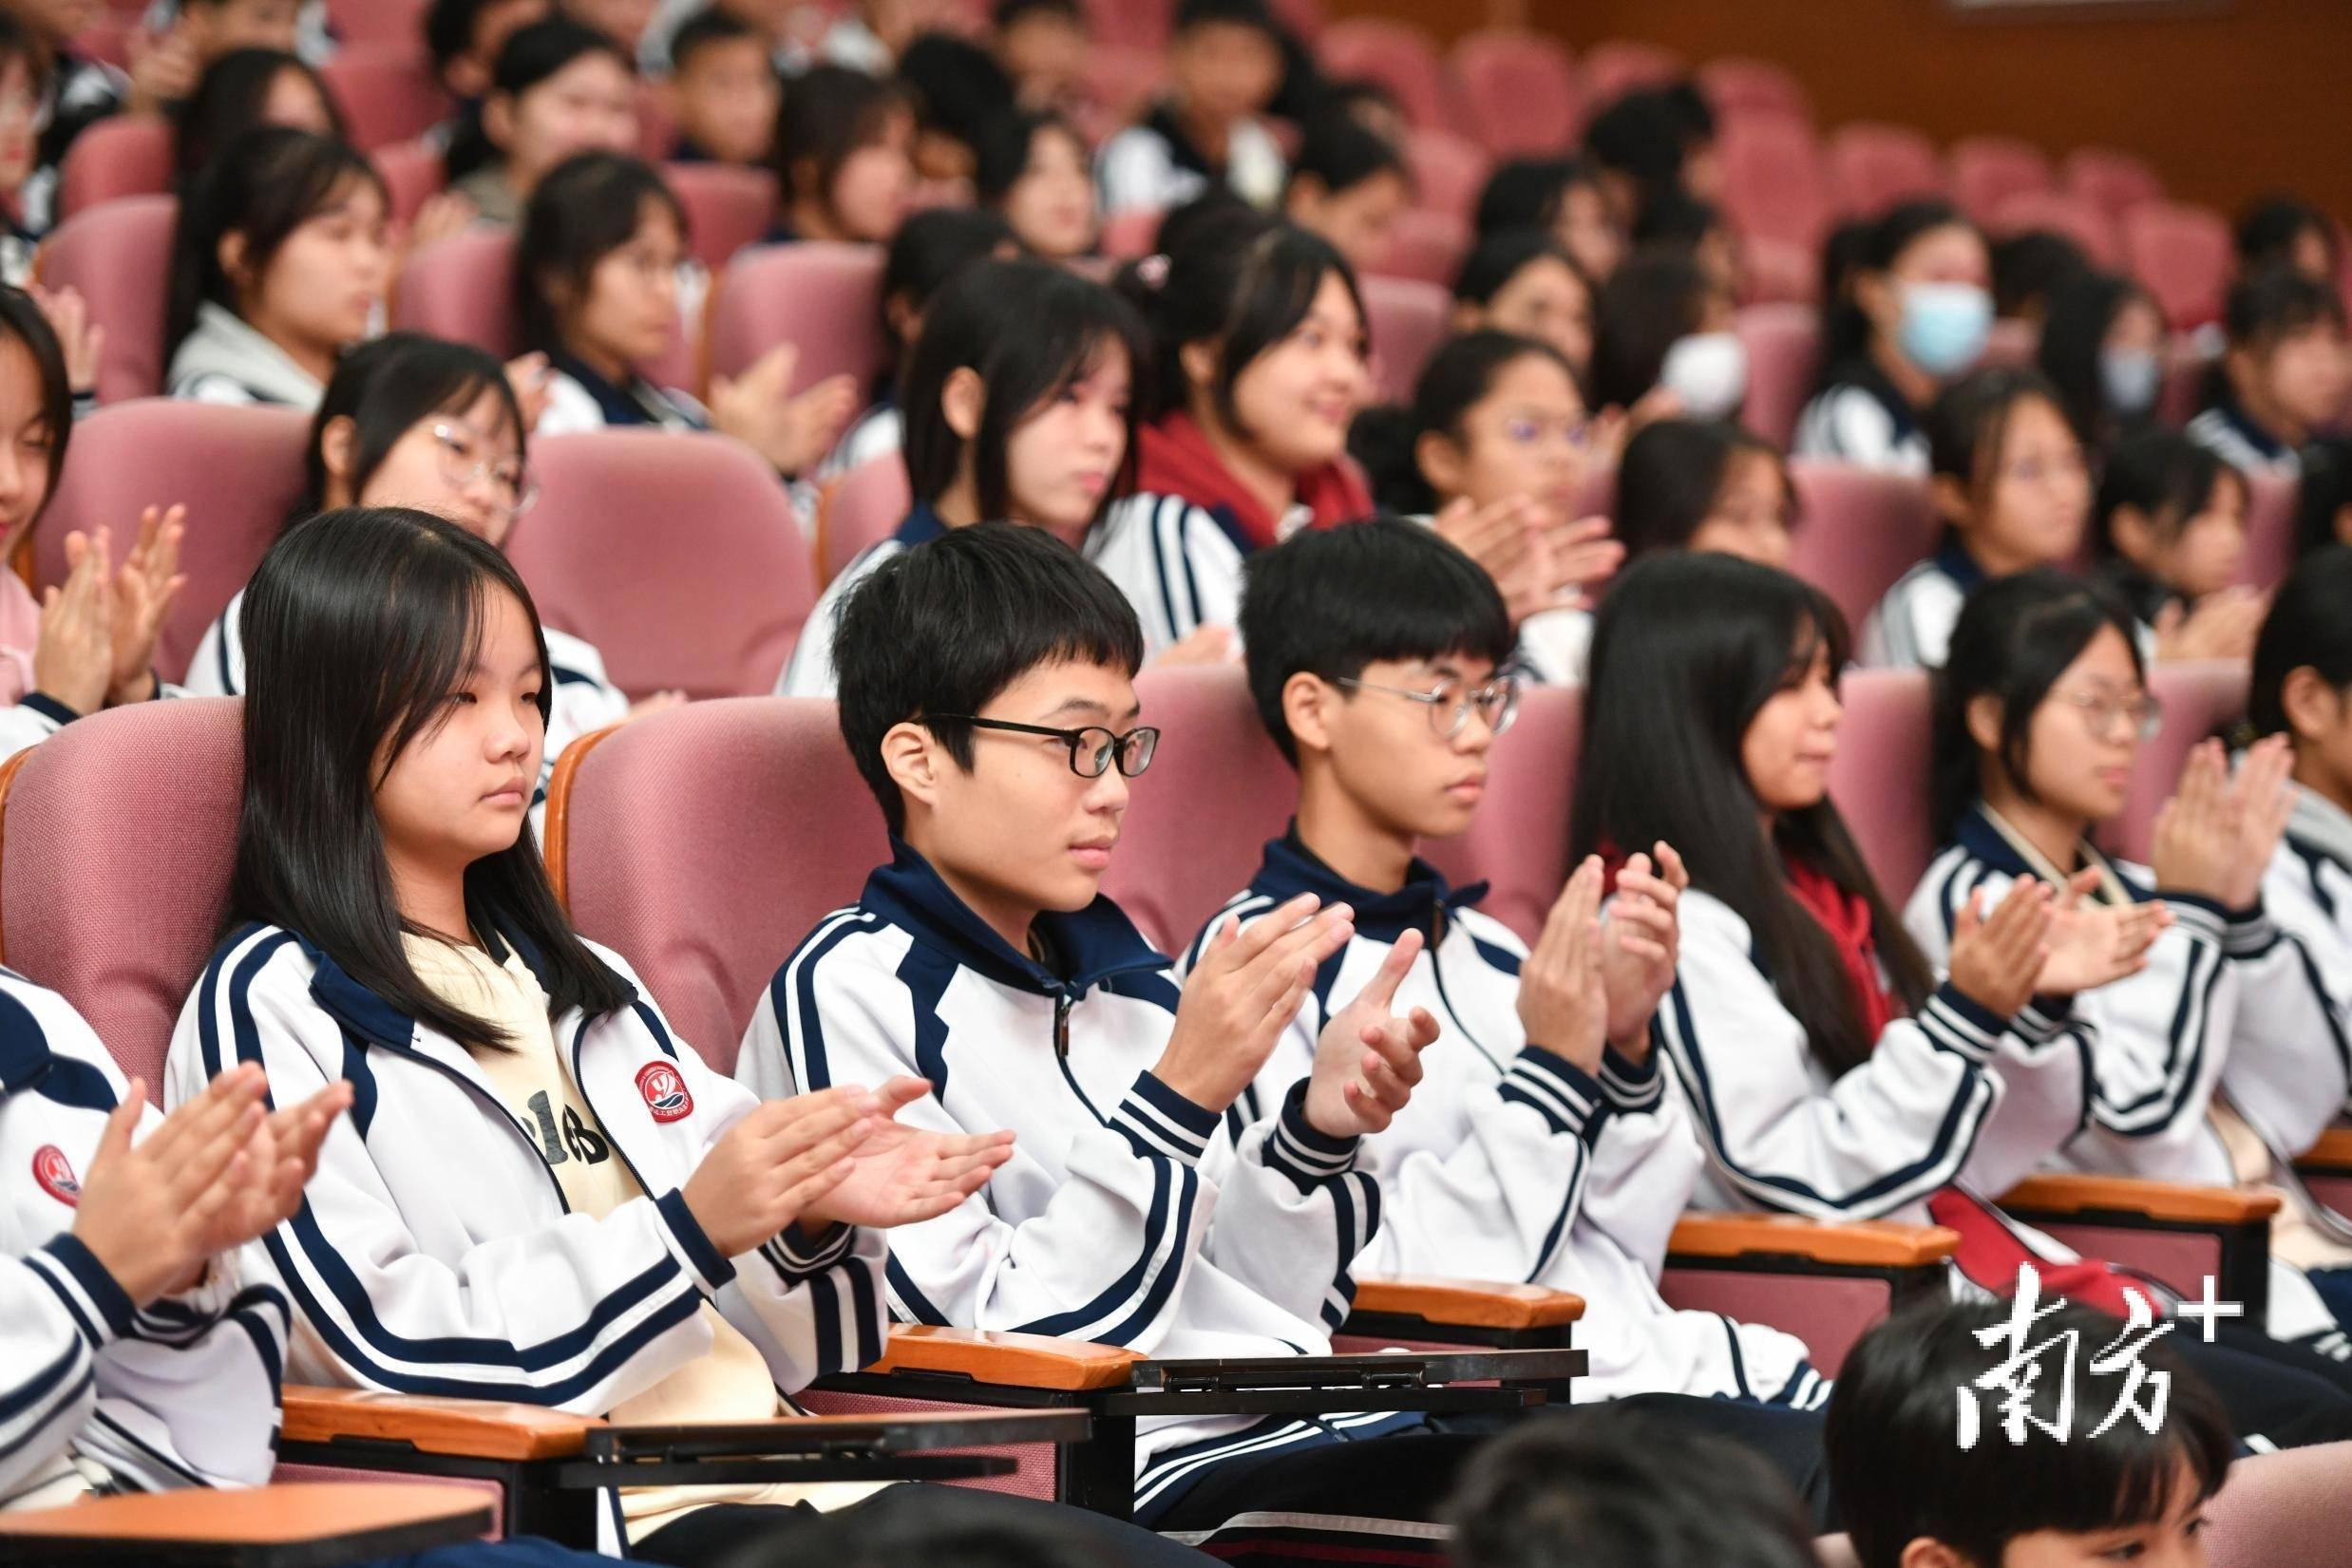 清远市教育局职业与高等教育科负责人潘志新在讲话中表示,各职业院校